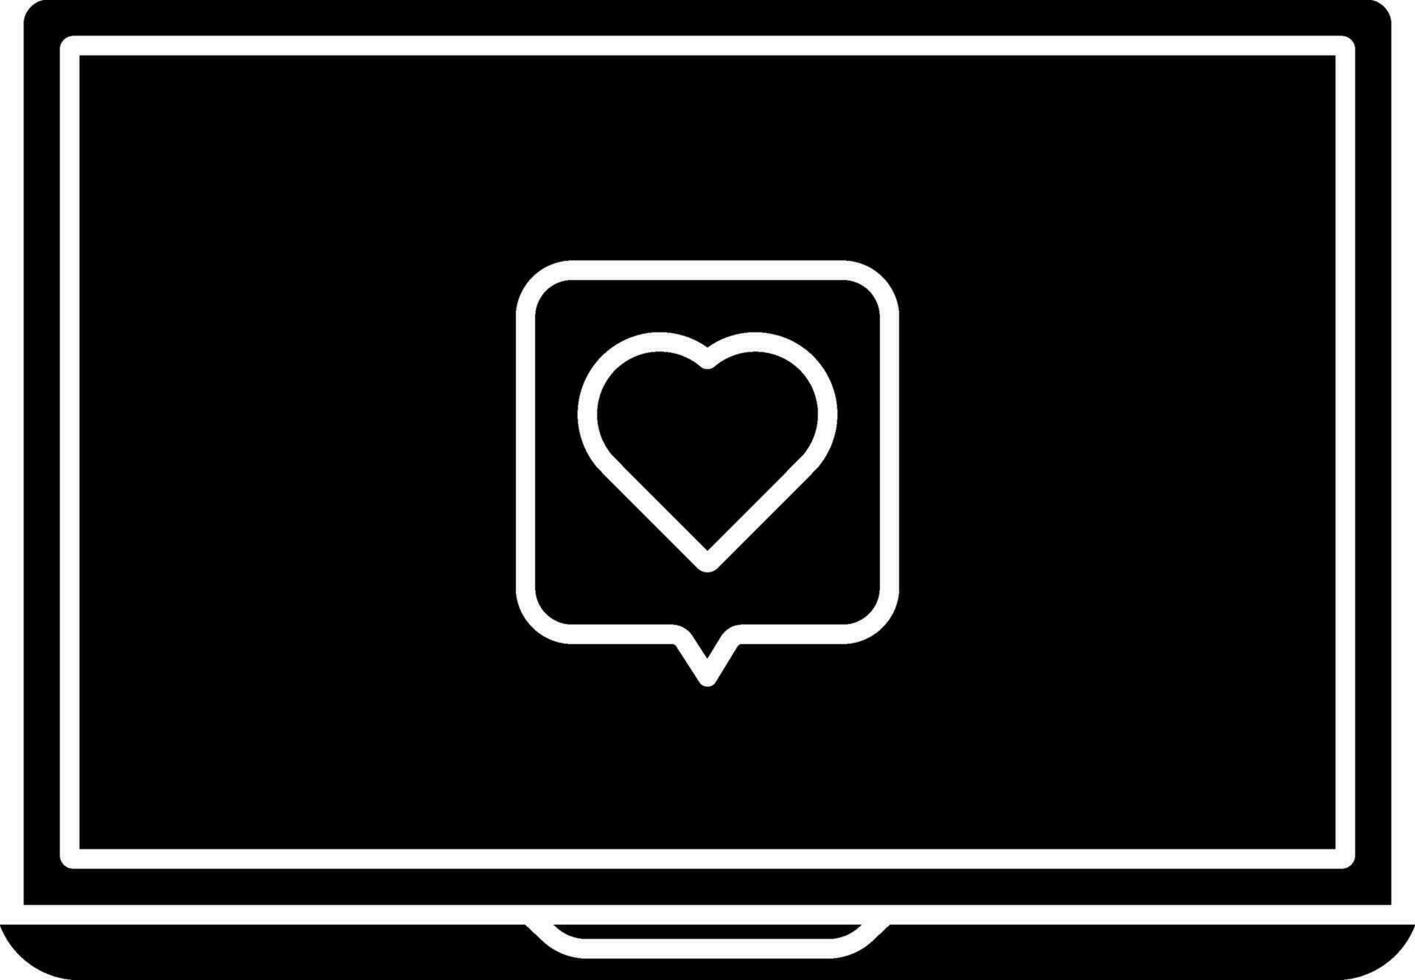 amor o favorito mensaje en ordenador portátil icono. vector